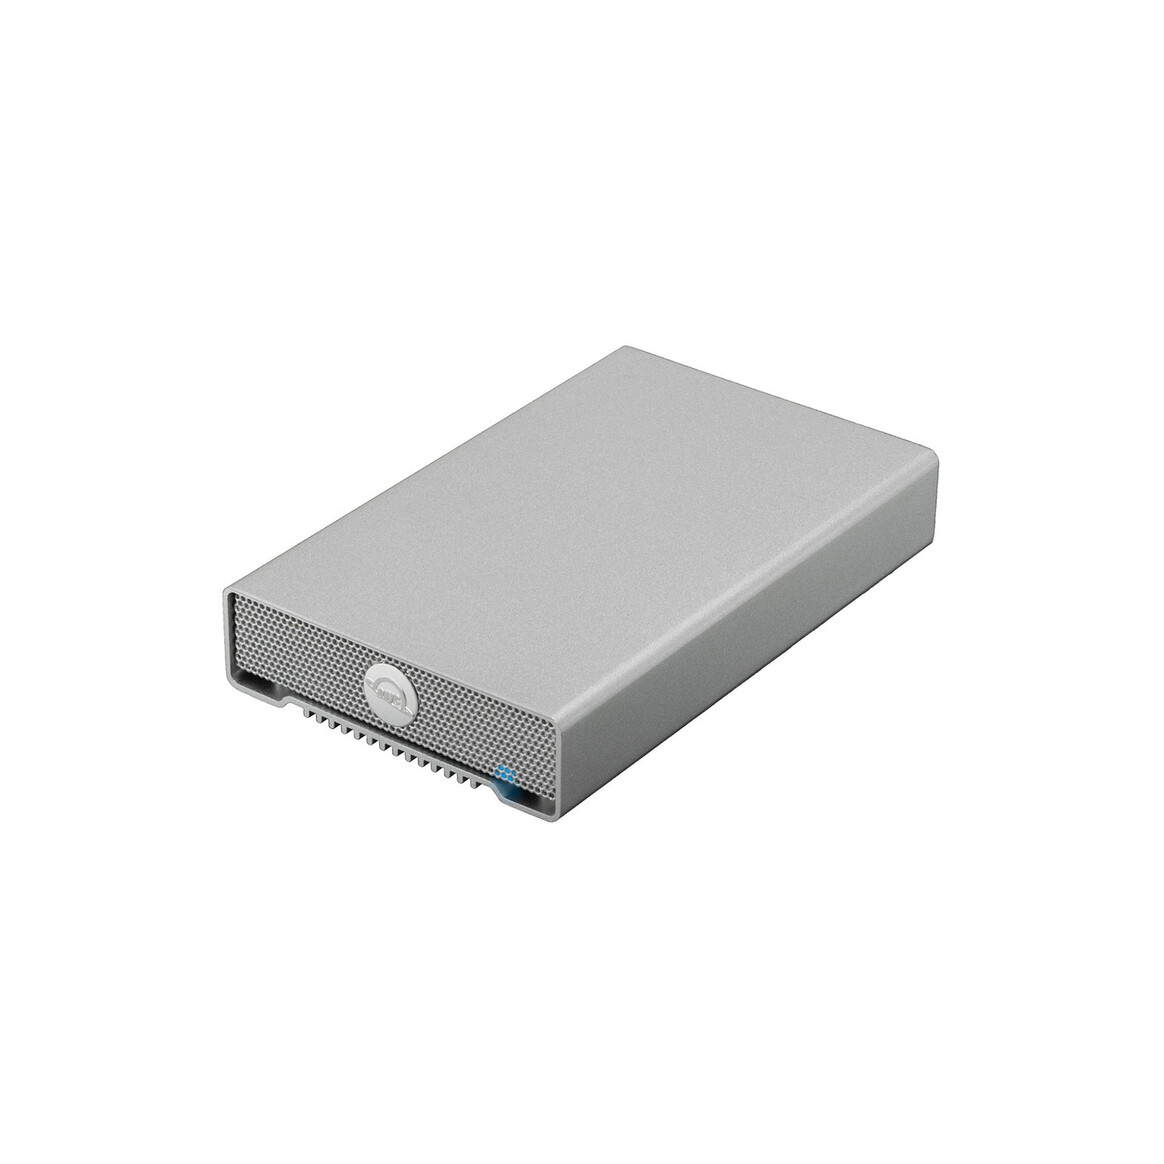 <h1>OWC 2TB Mercury Elite Pro mini USB-C portable Hard Drive</h1>